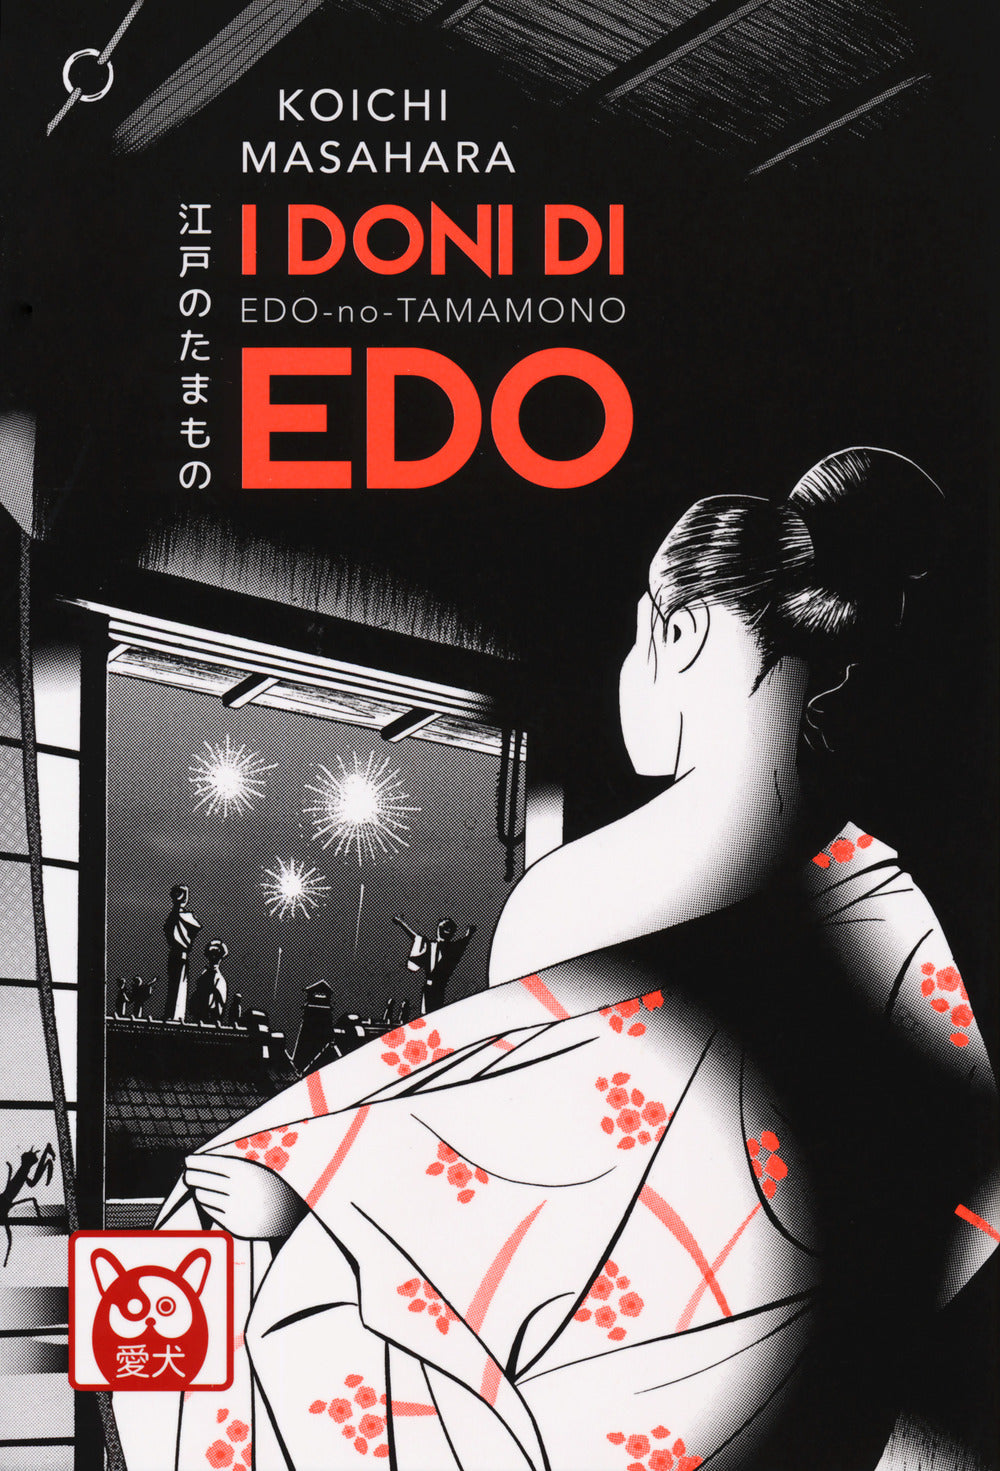 I doni di Edo.